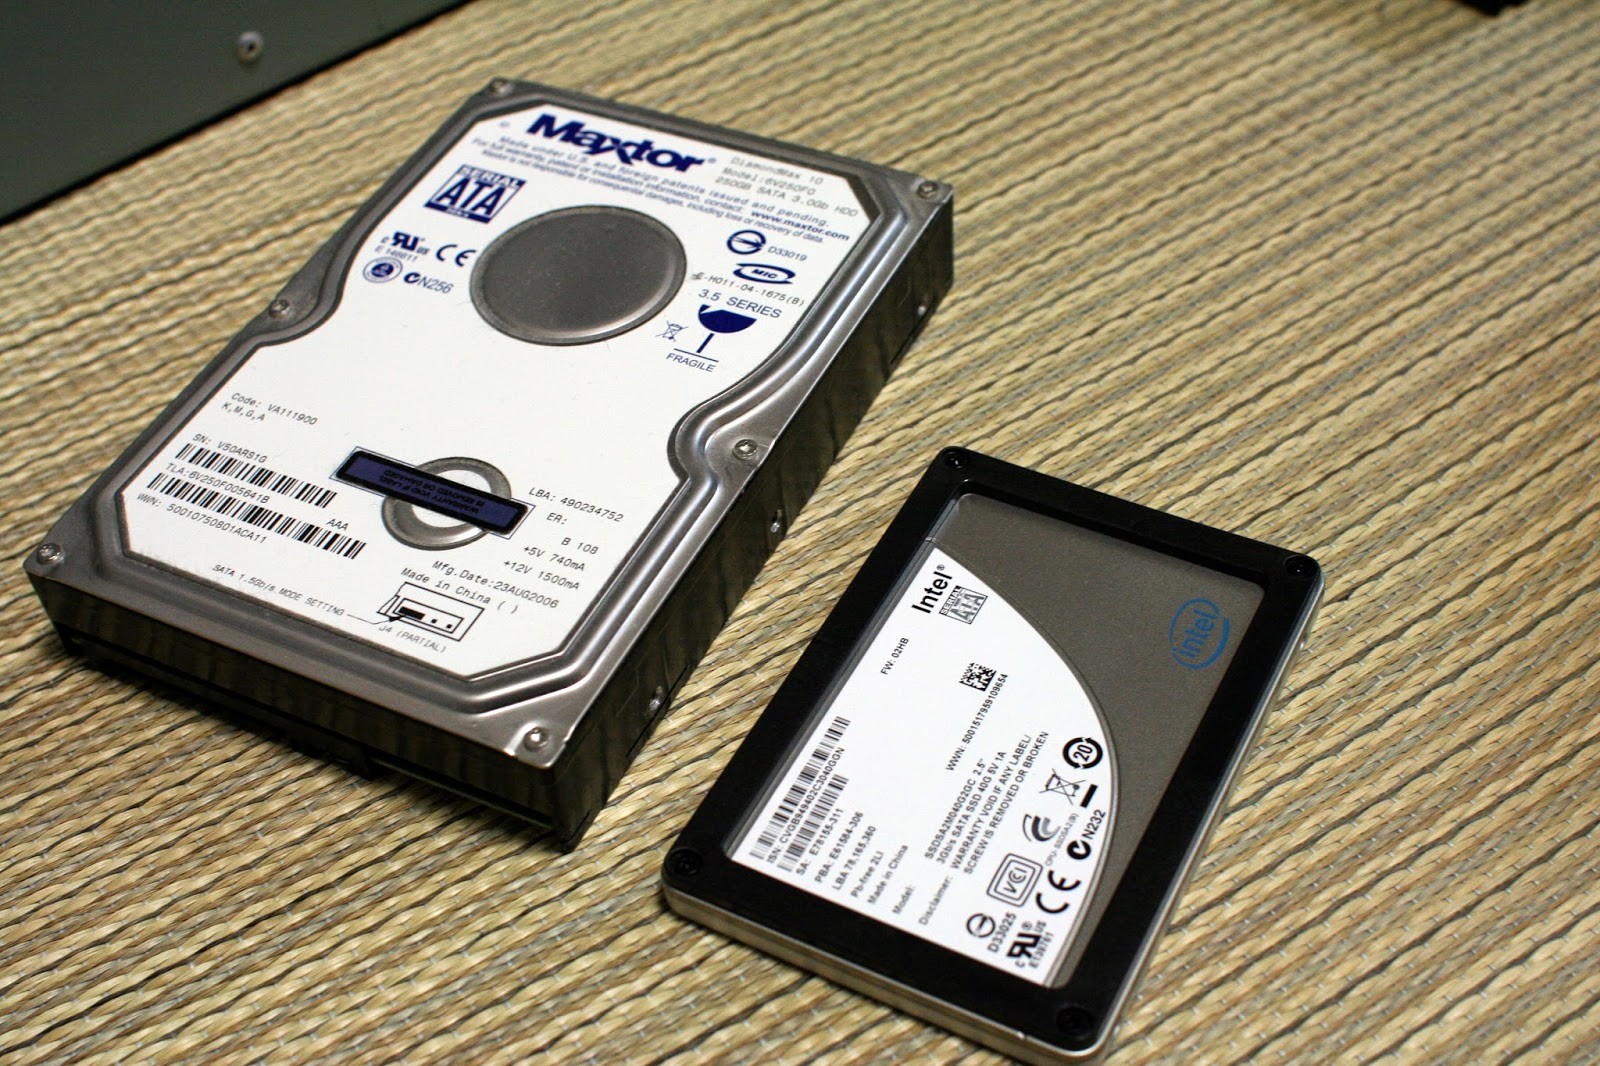 Mending Beli SSD atau HDD? Inilah Perbedaan harddisk dan SSD yang Bisa Kalian Pertimbangkan Sebelum Membeli